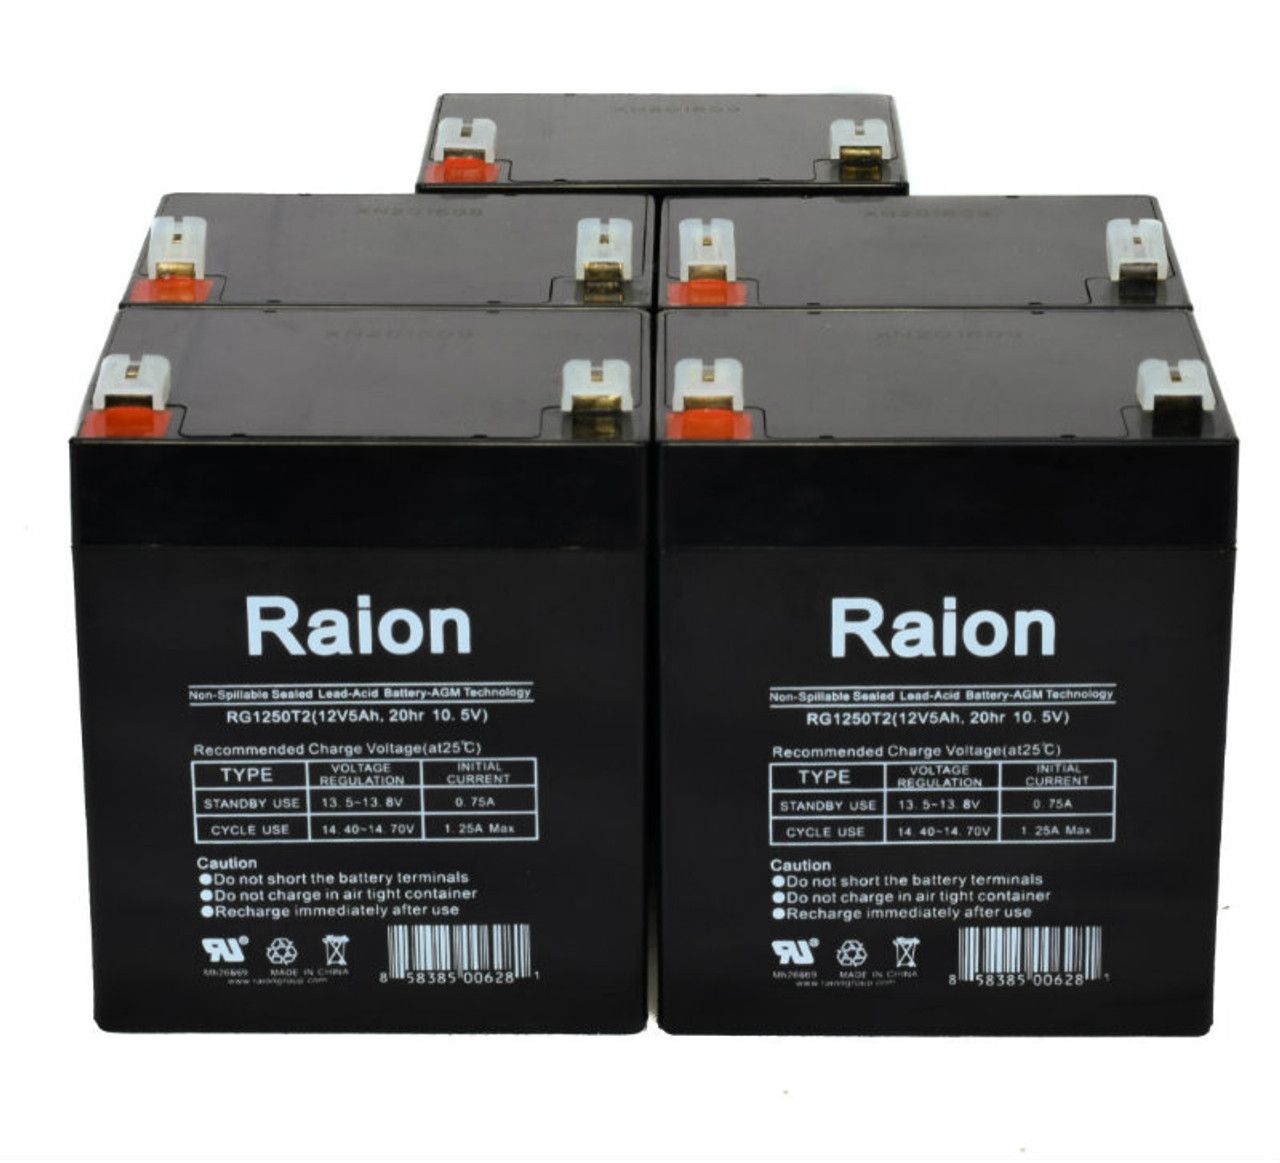 Raion Power RG1250T1 12V 5Ah Medical Battery for Arjo-Century Maxi Lite Sling Lift - 5 Pack